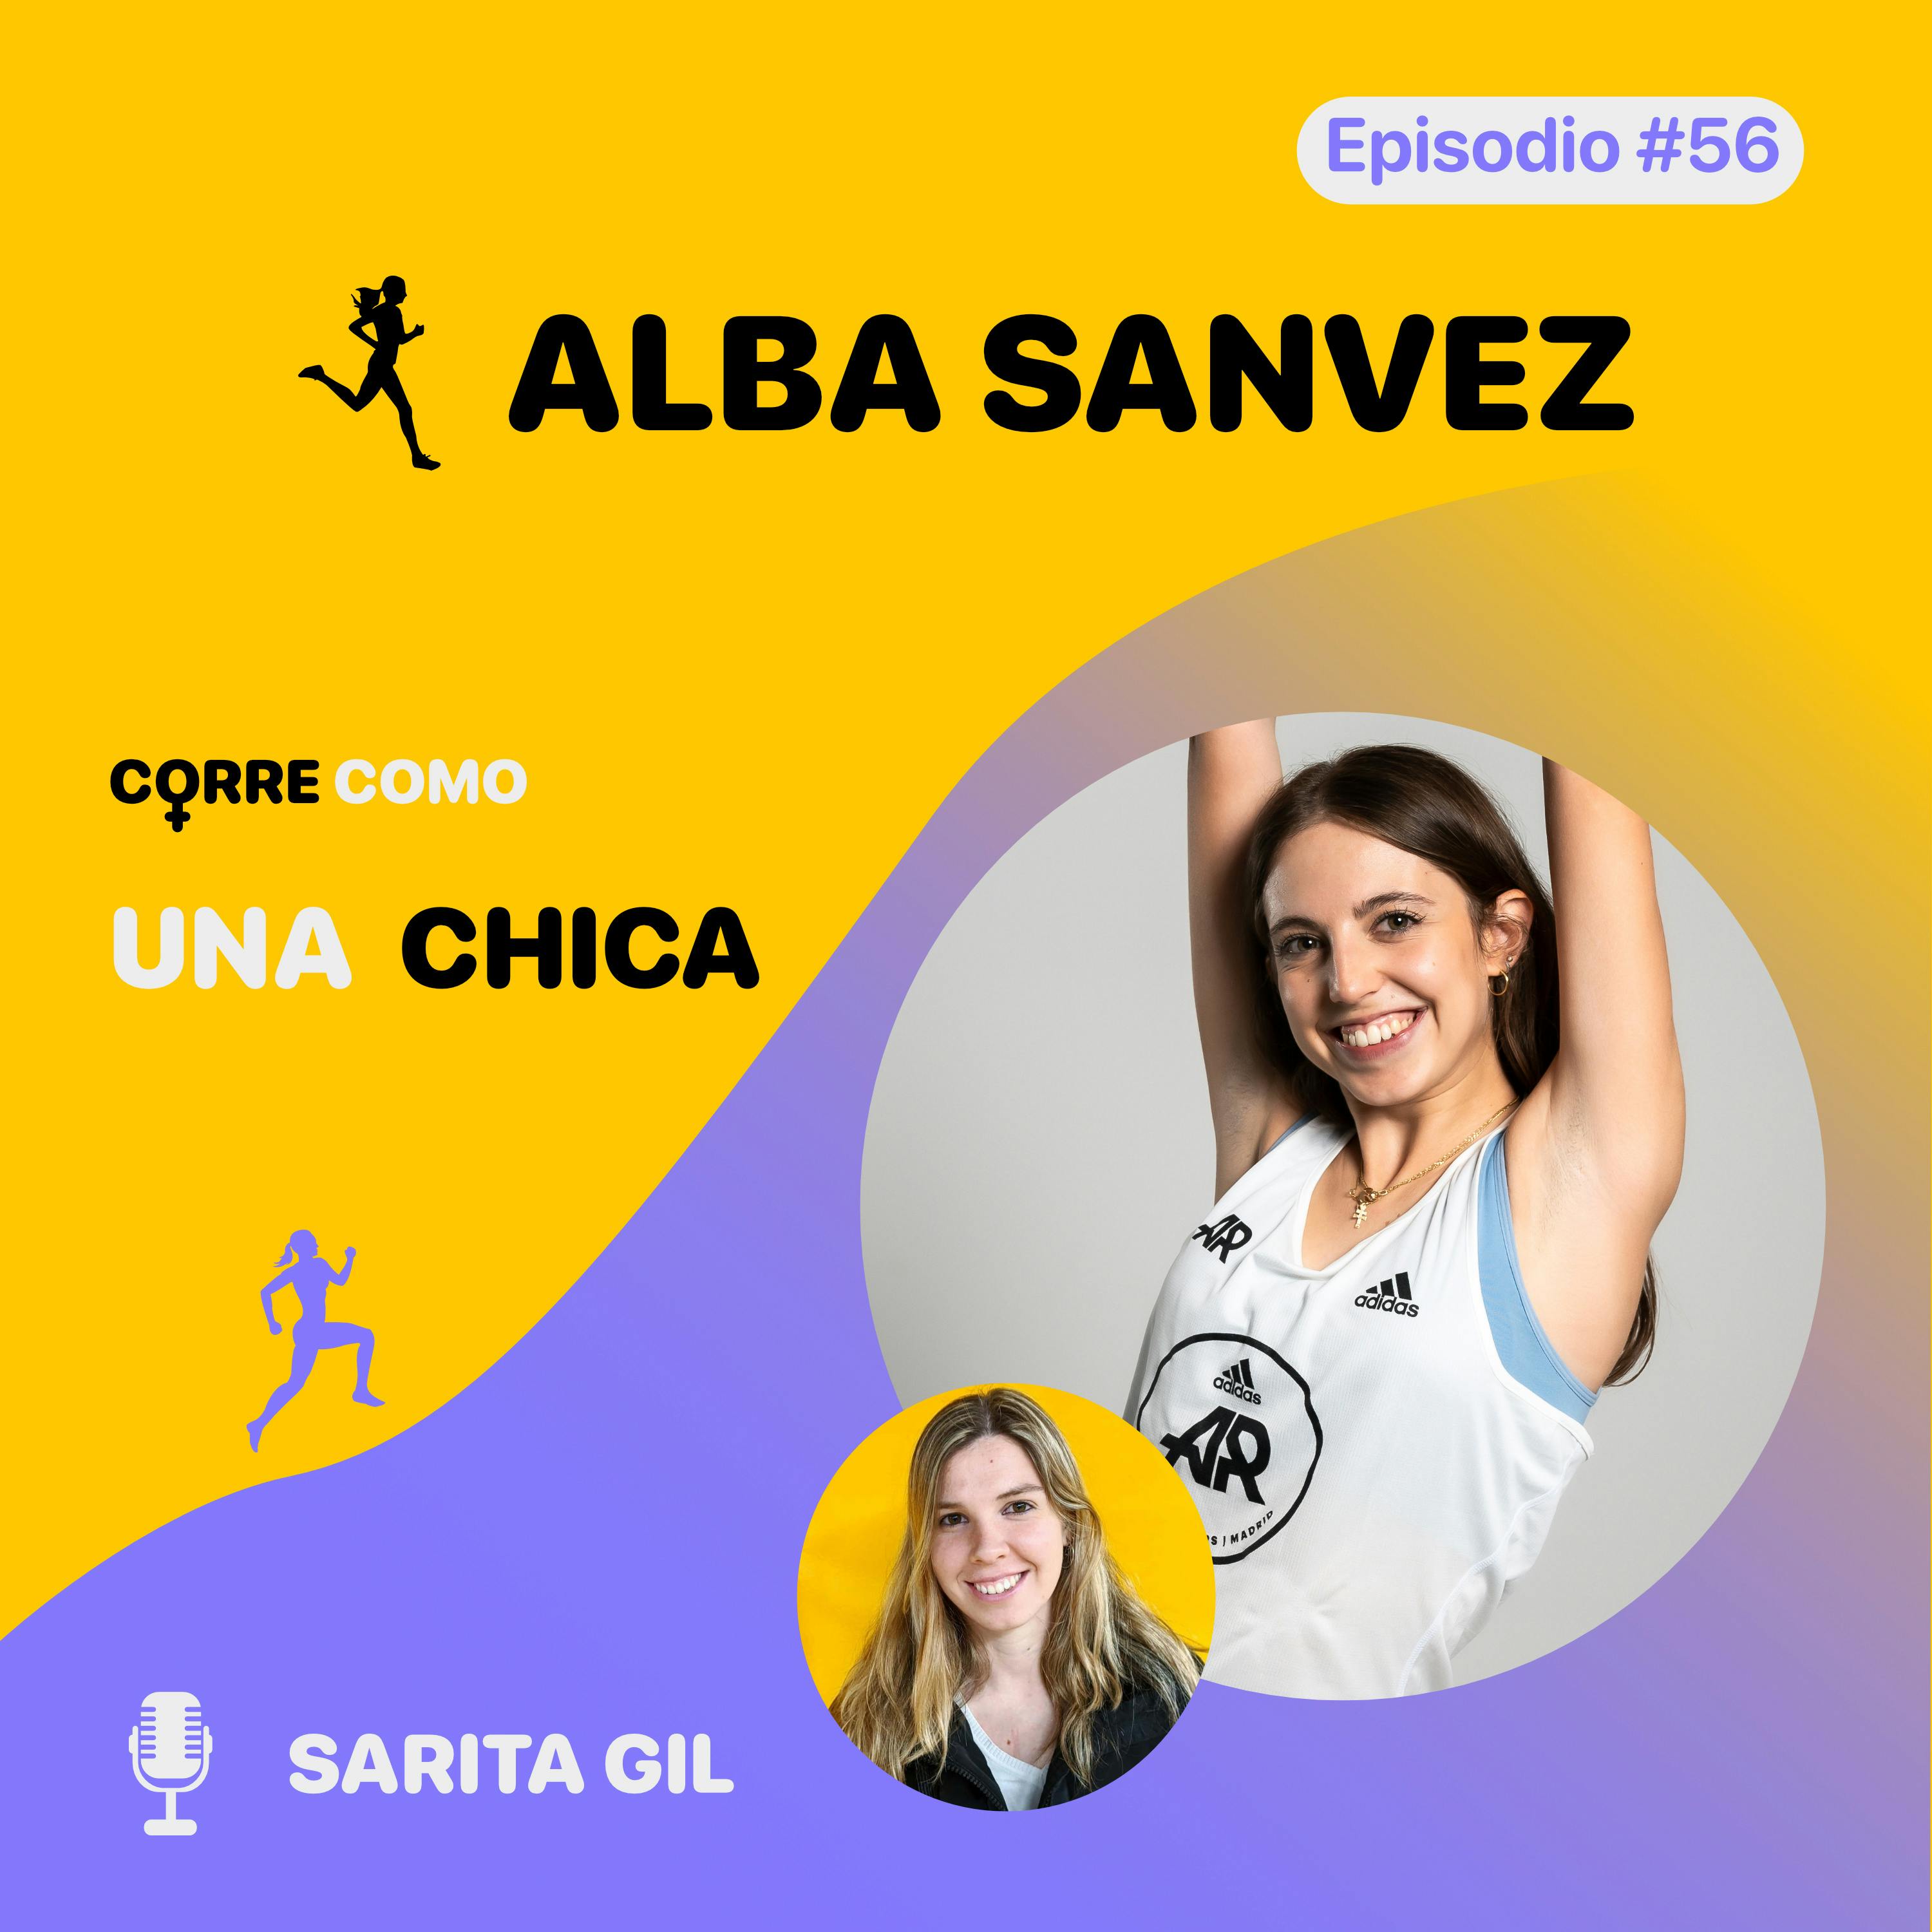 imagen de portada de: Episodio #56 - Alba Sanvez: “Disfrutar de correr” 